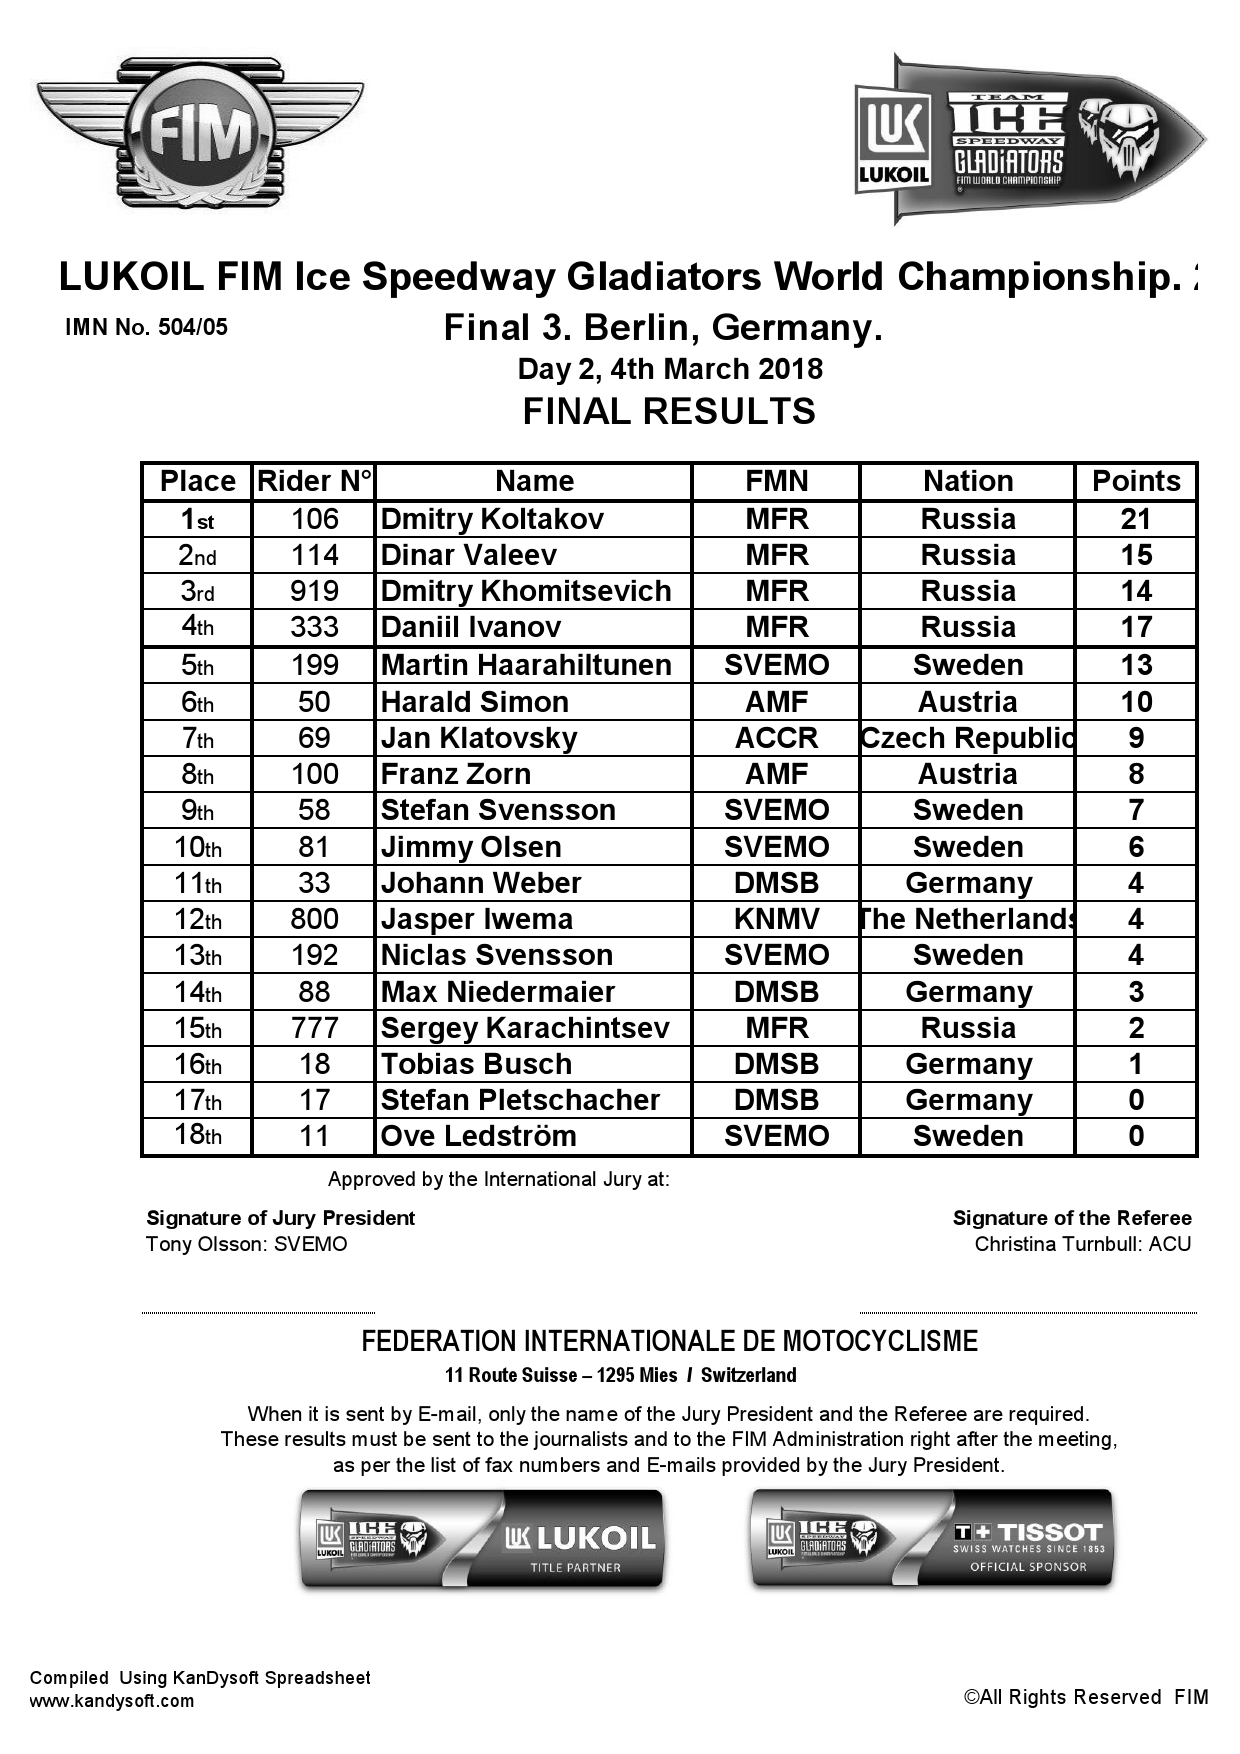 Результаты 2 дня 3 финала ЛЧМ по мотогонкам на льду FIM Ice Speedway Gladiators, Берлин - 4.03.2018